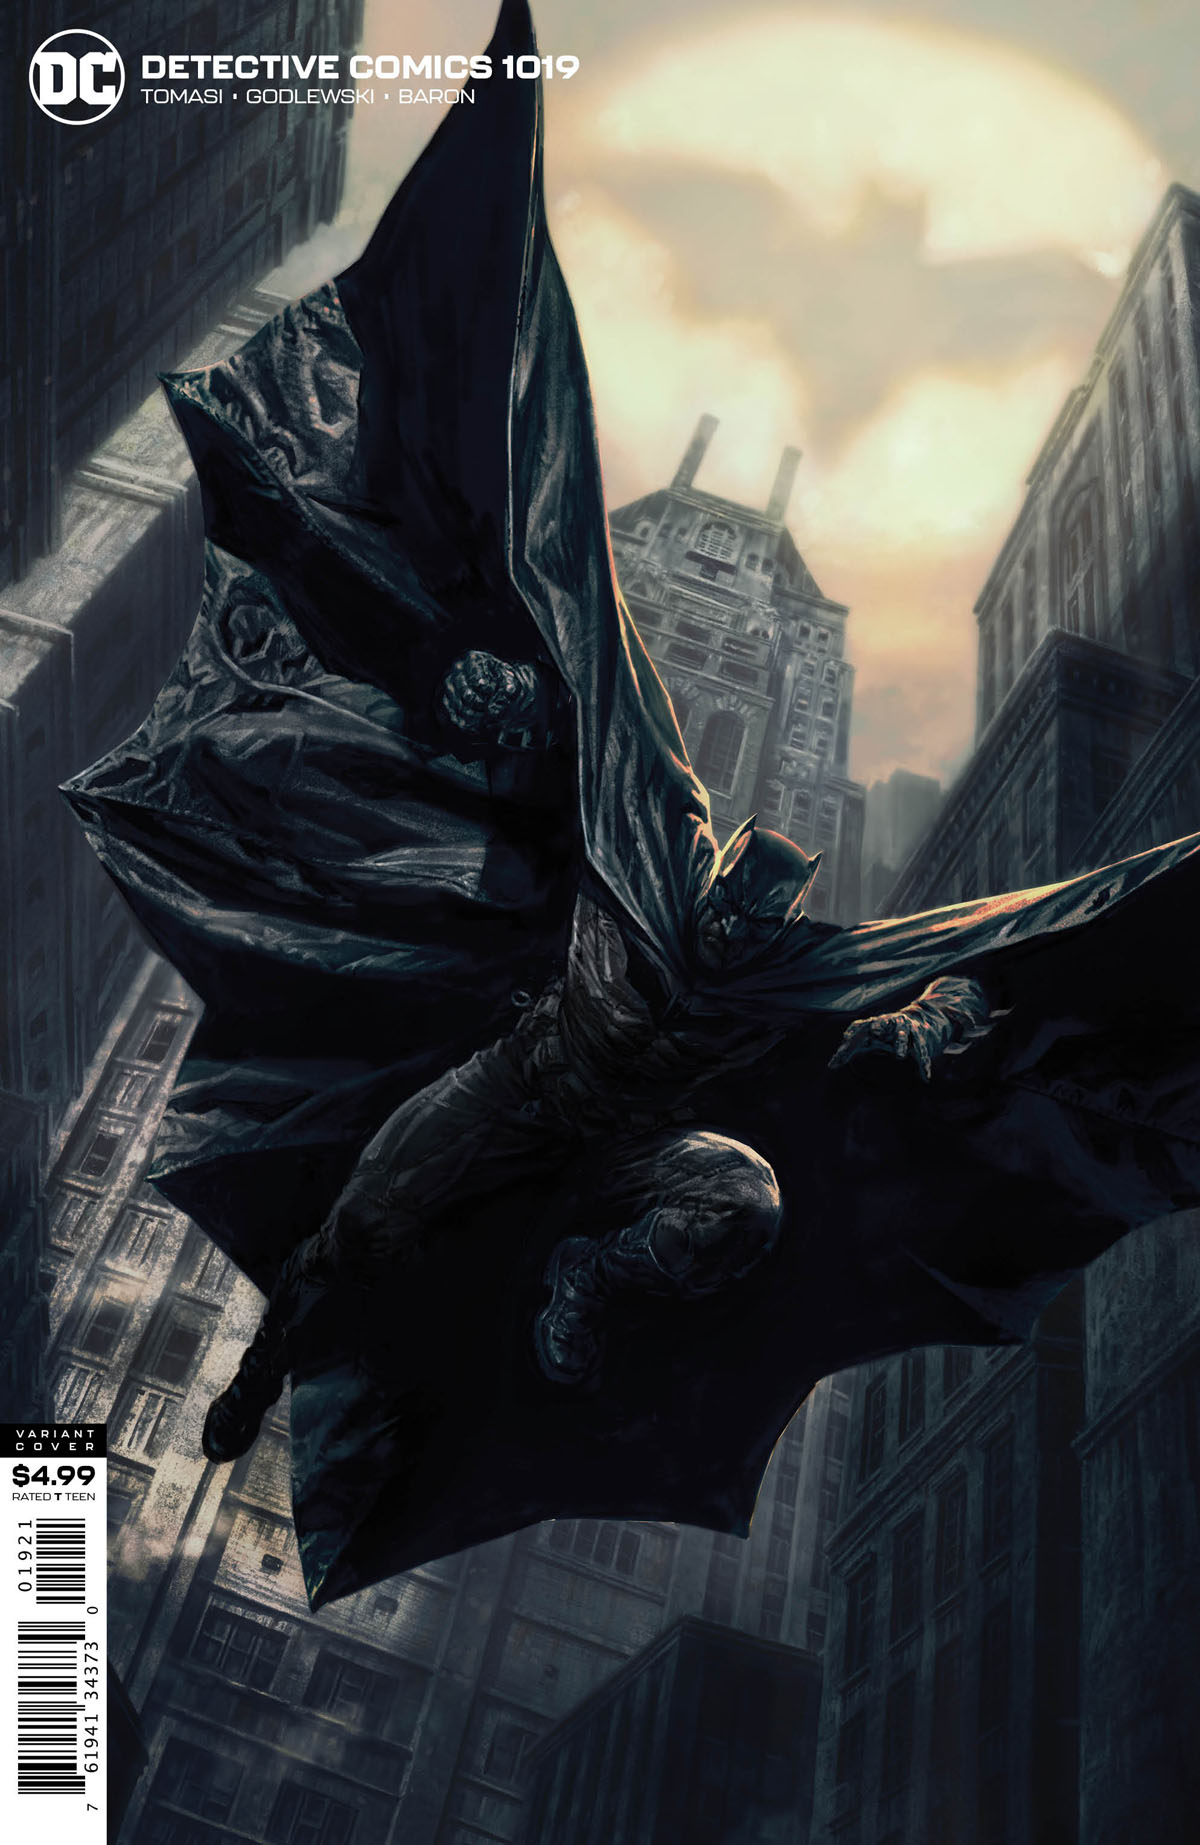 Detective Comics #1019 variant cover